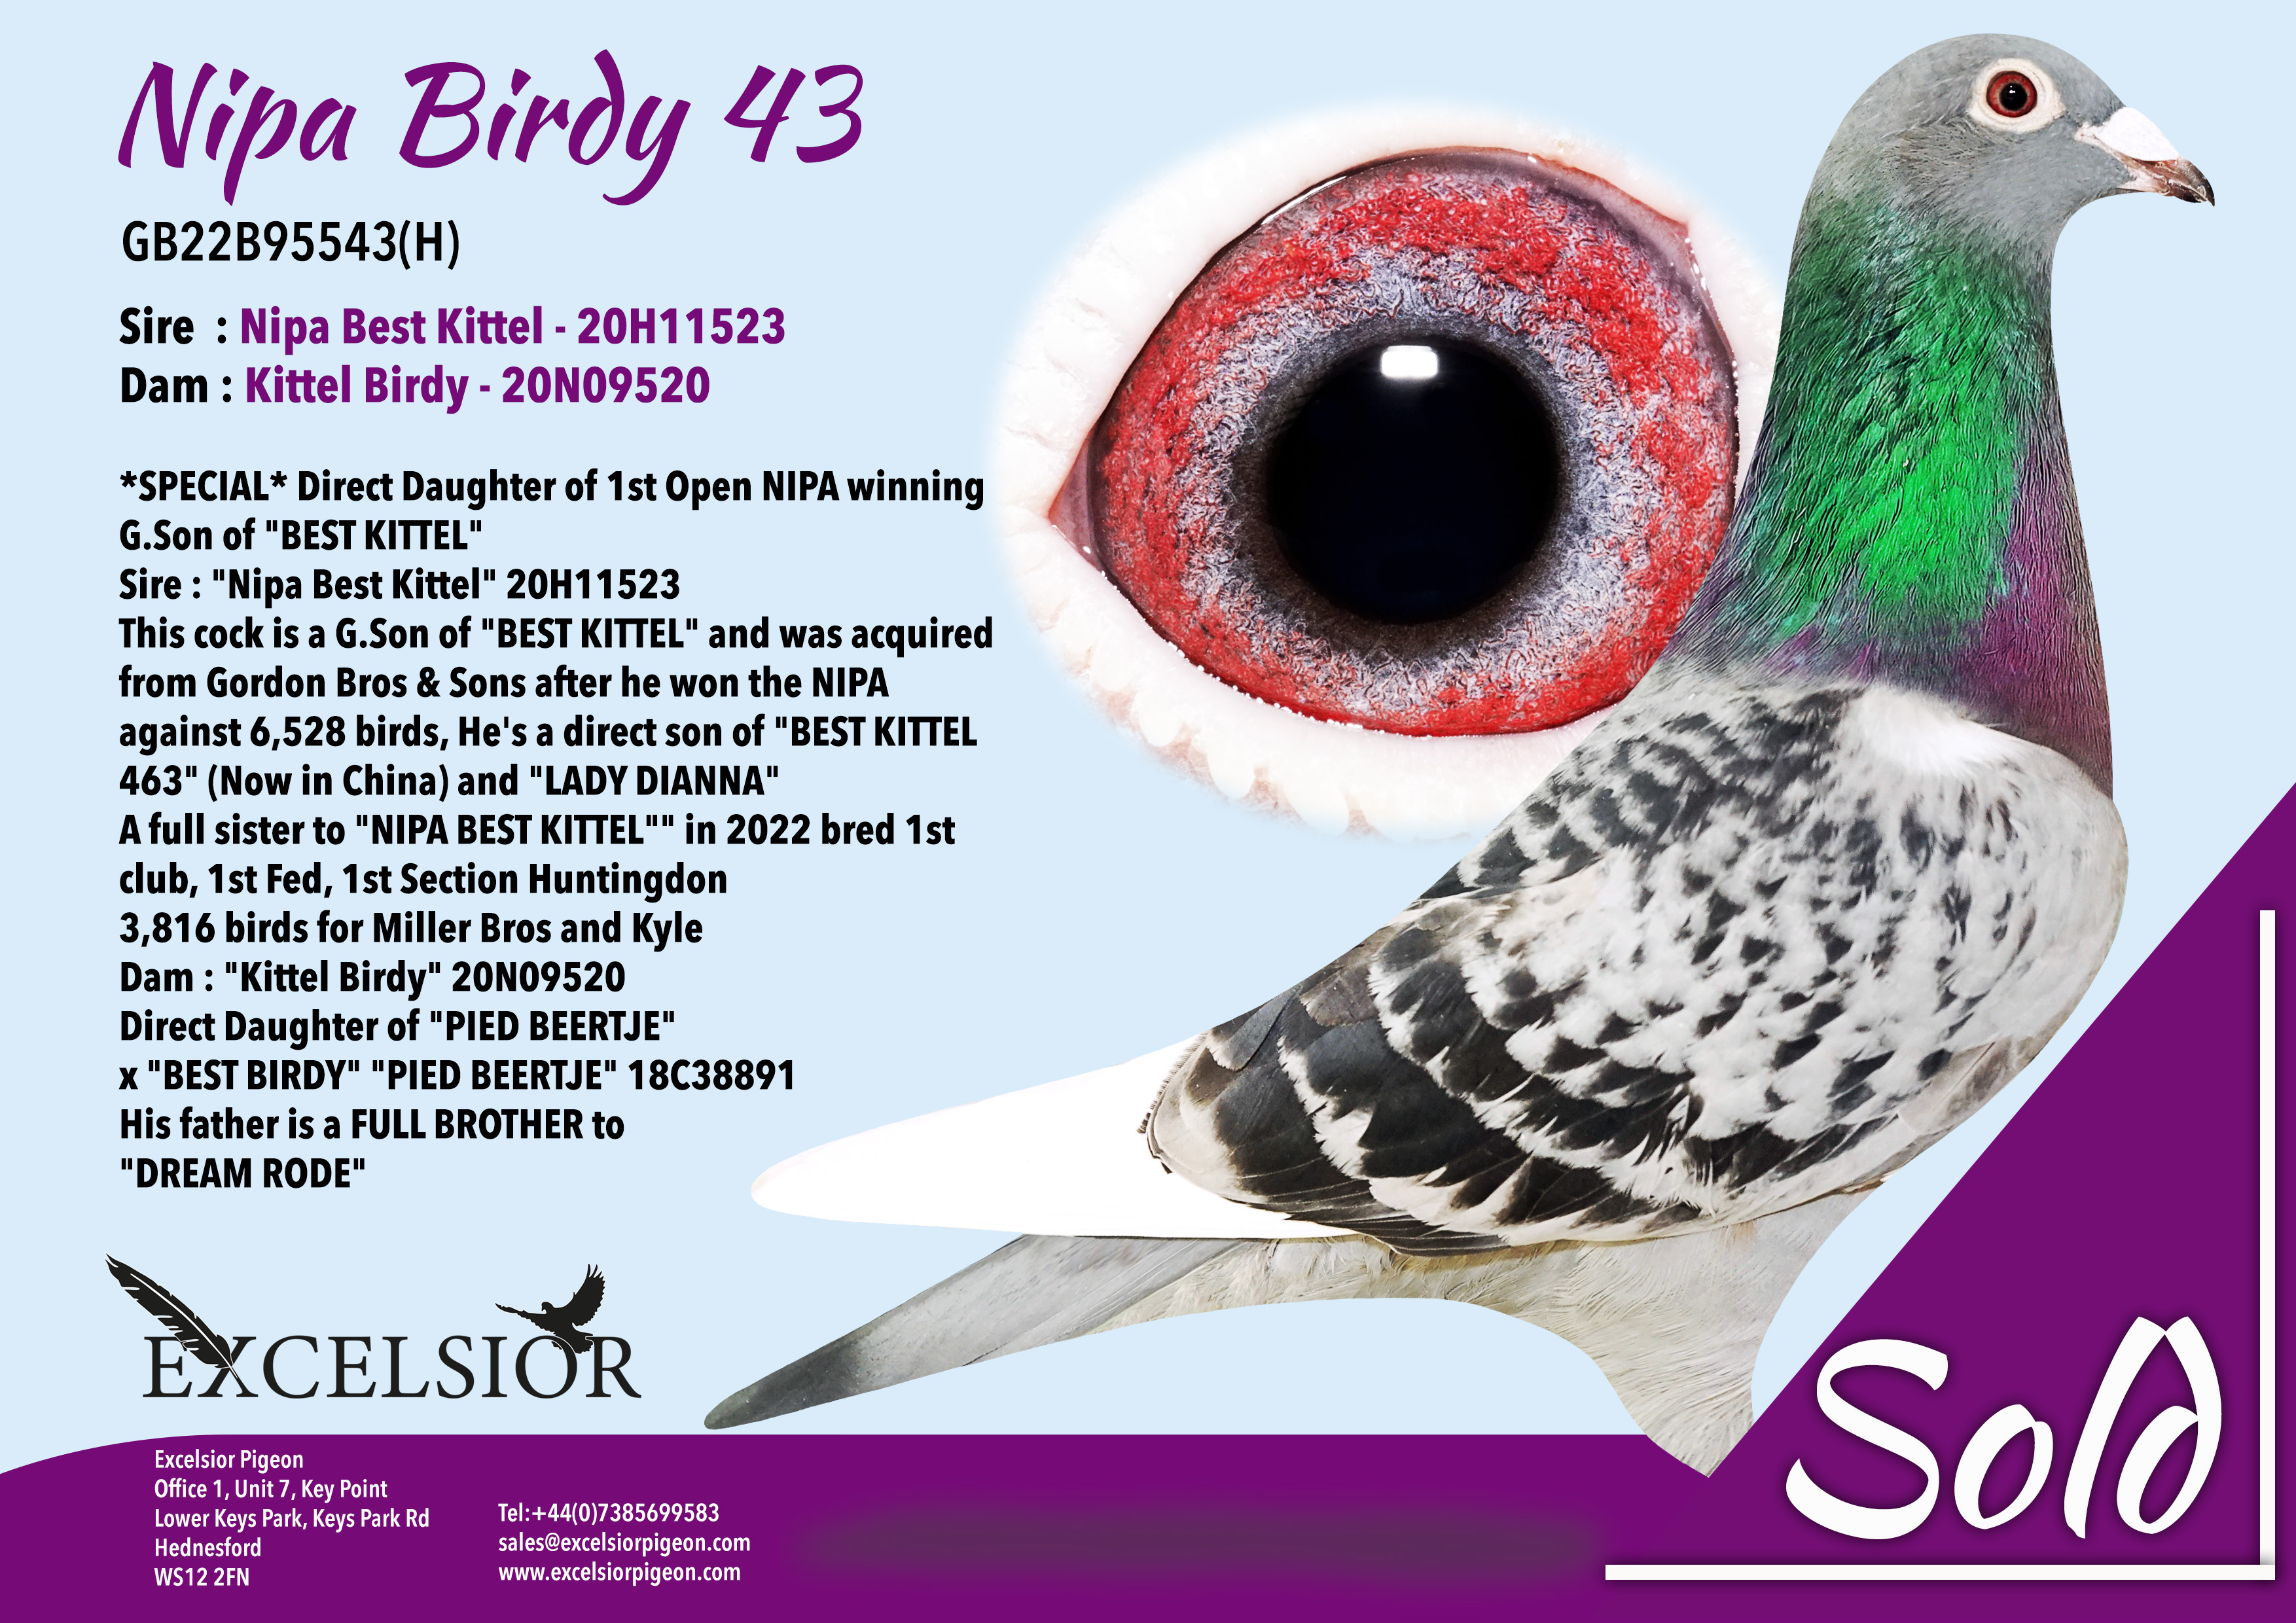 nipa-birdy-43-gb22b95543